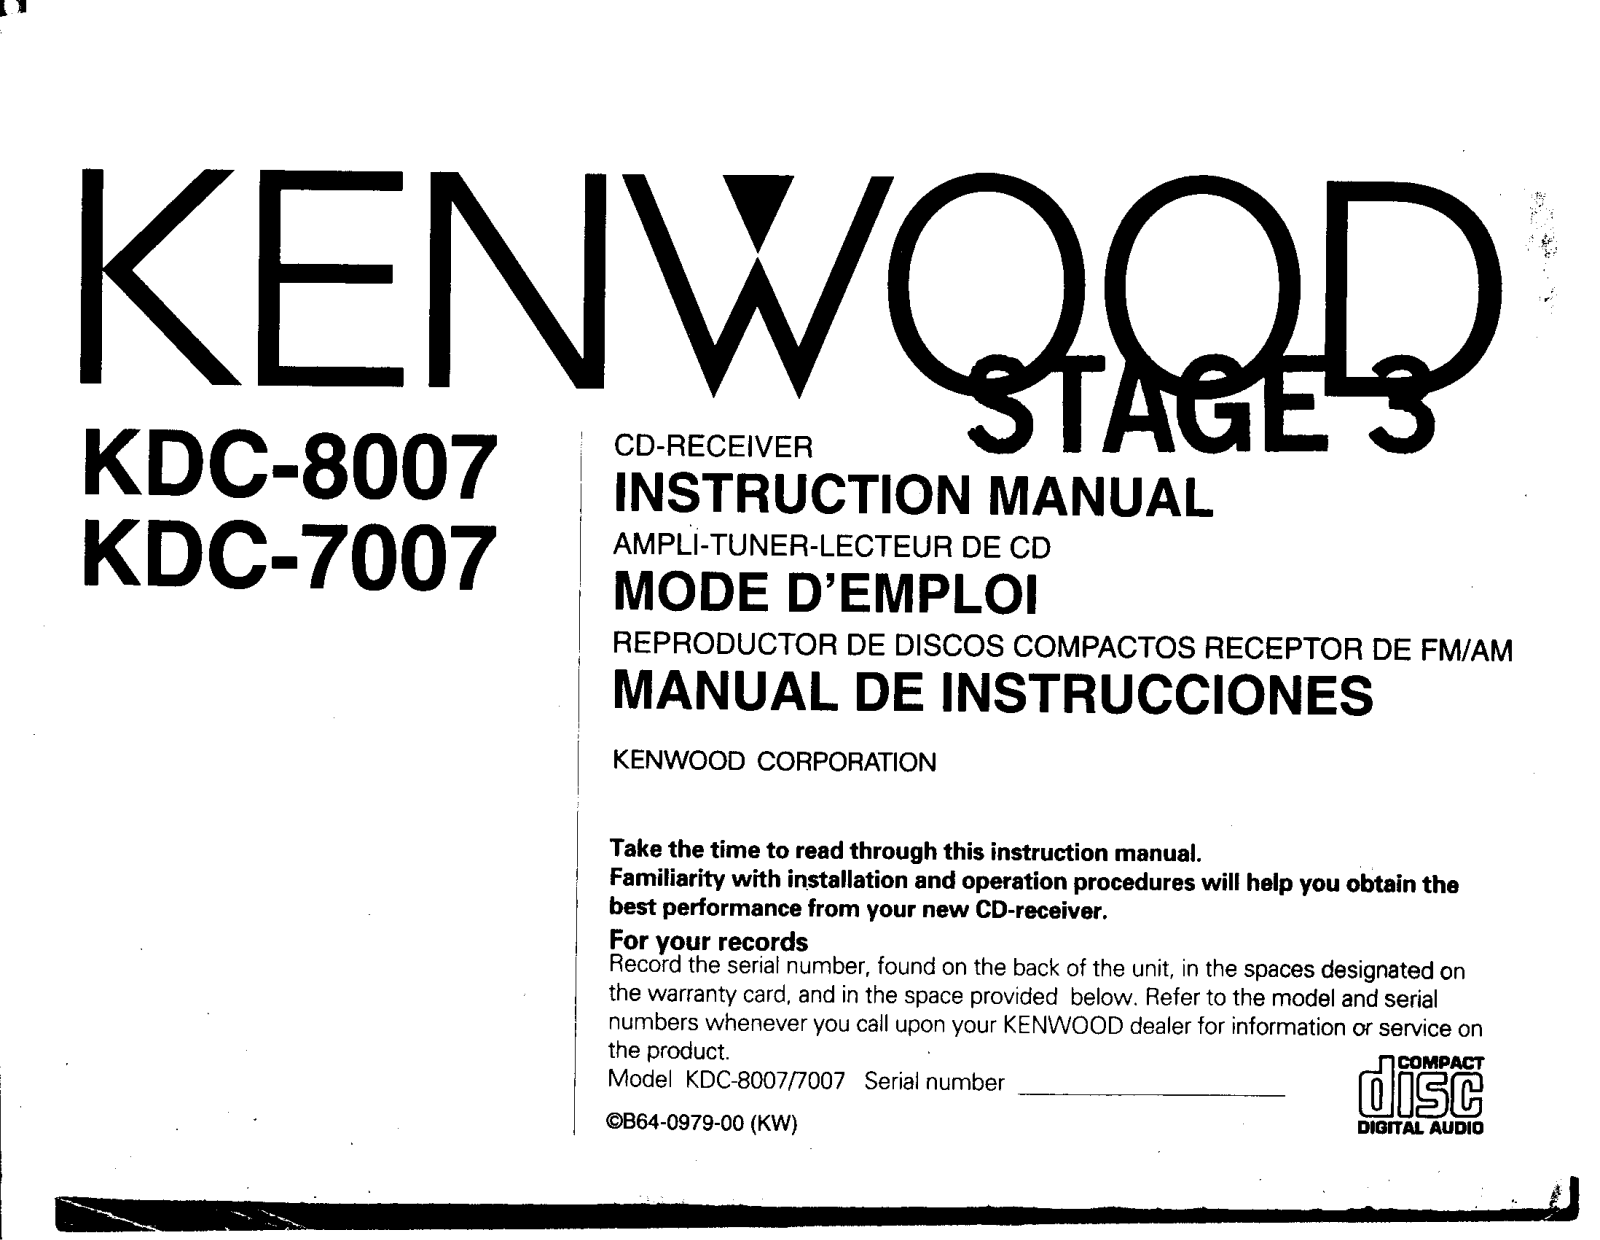 Kenwood KDC-8007, KDC-7007 Owner's Manual